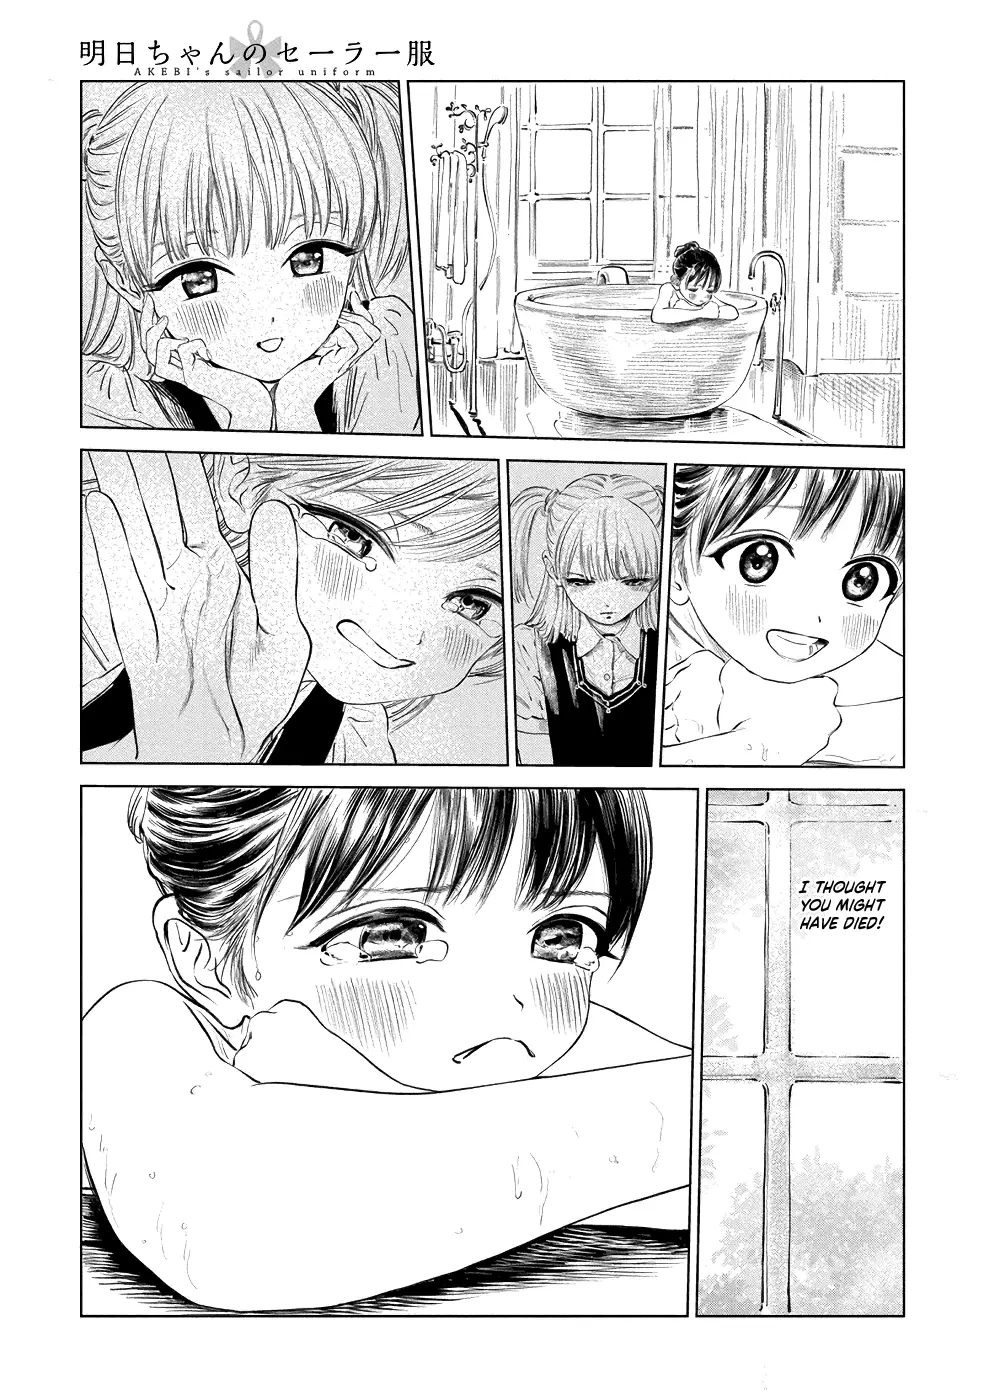 Akebi-Chan No Sailor Fuku - 41 page 1